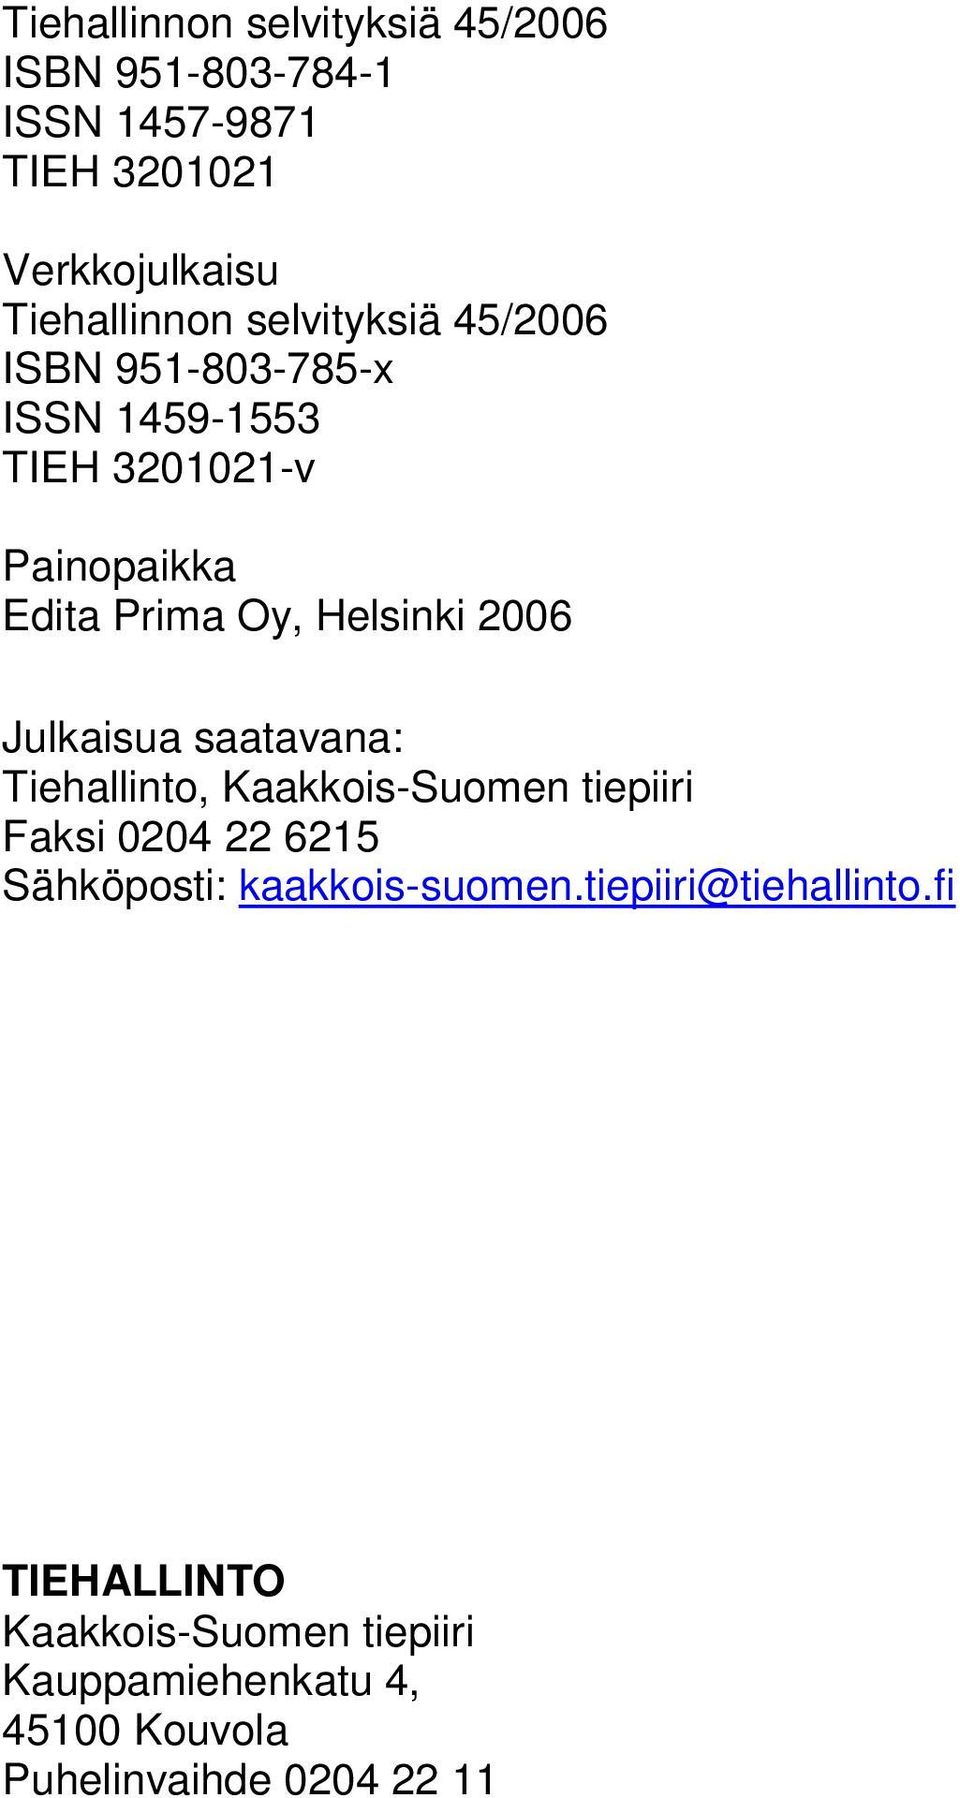 Julkaisua saatavana: Tiehallinto, Kaakkois-Suomen tiepiiri Faksi 0204 22 6215 Sähköposti: kaakkois-suomen.